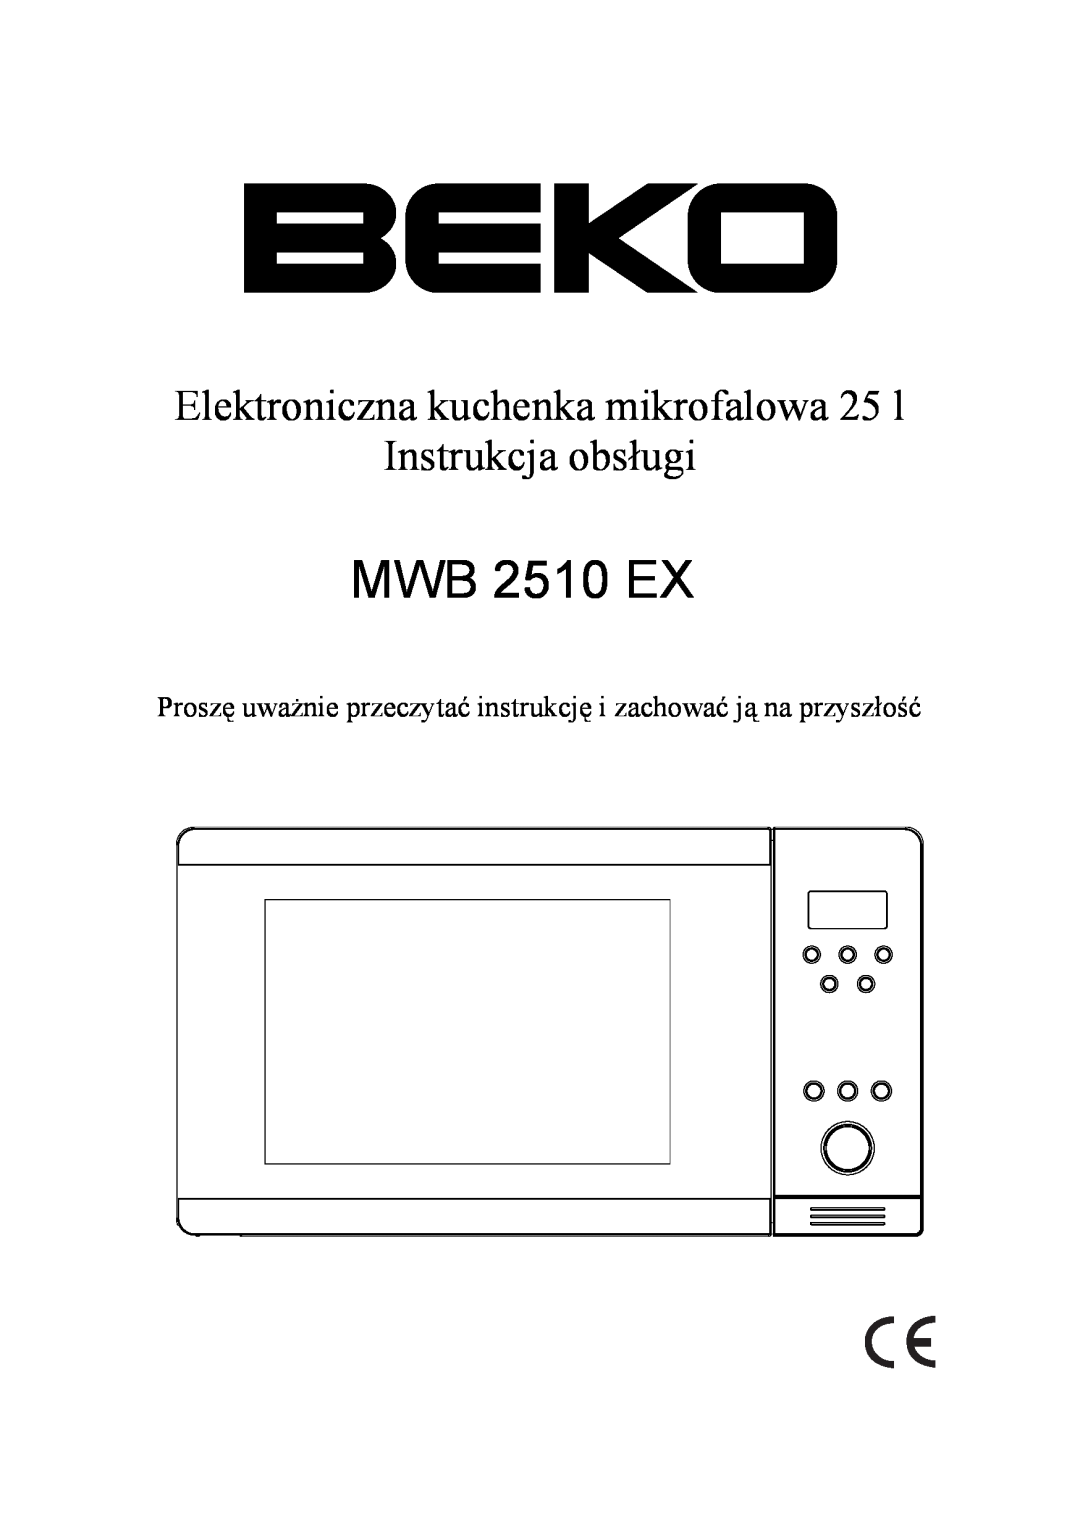 Beko MWB 2510 EX instruction manual Elektroniczna kuchenka mikrofalowa 25 l, Instrukcja obsługi 